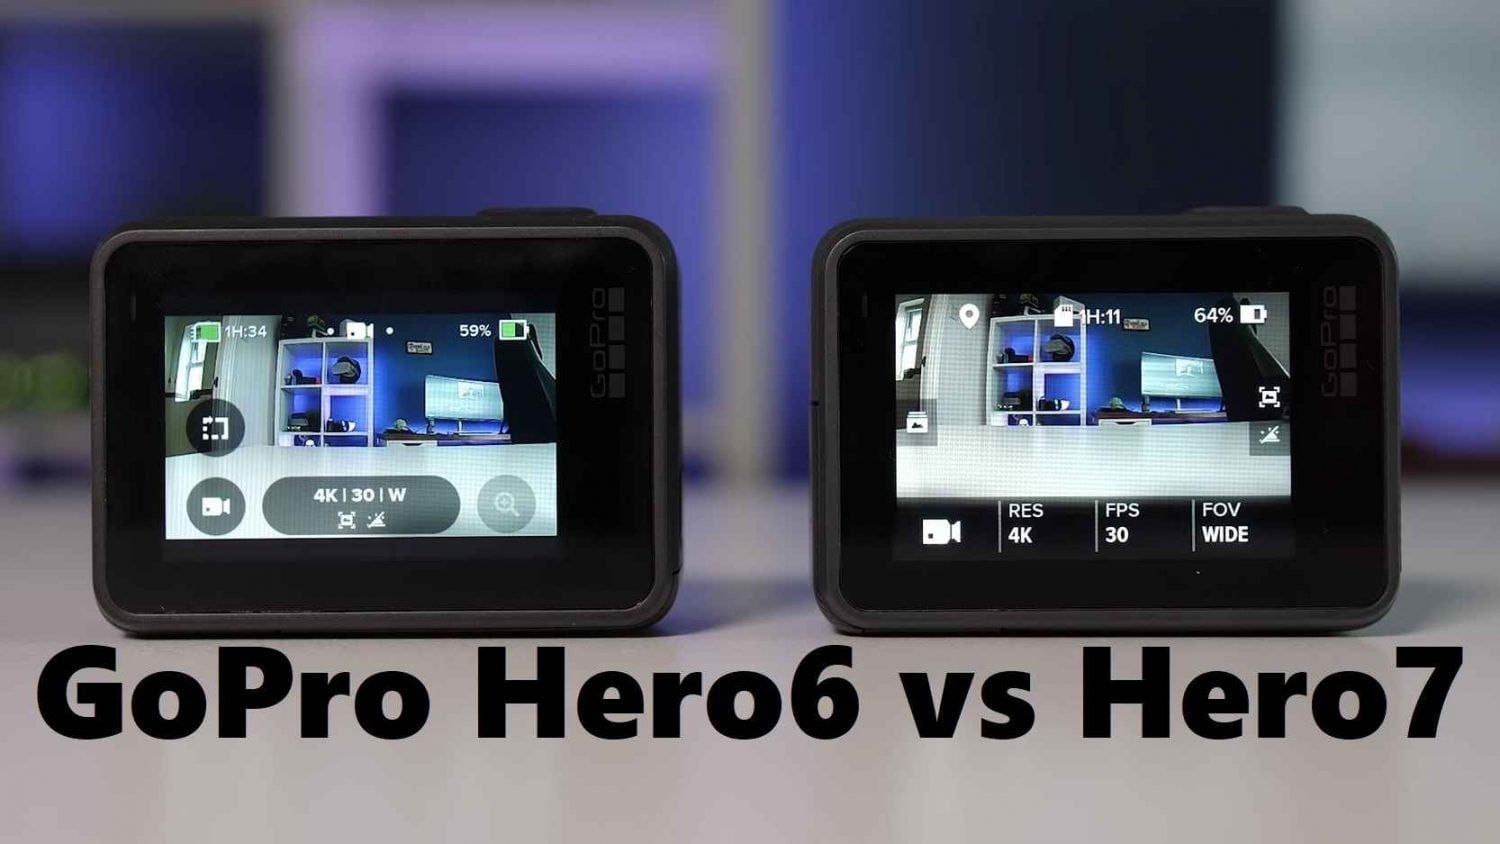 GoPro Hero6 vs Hero7